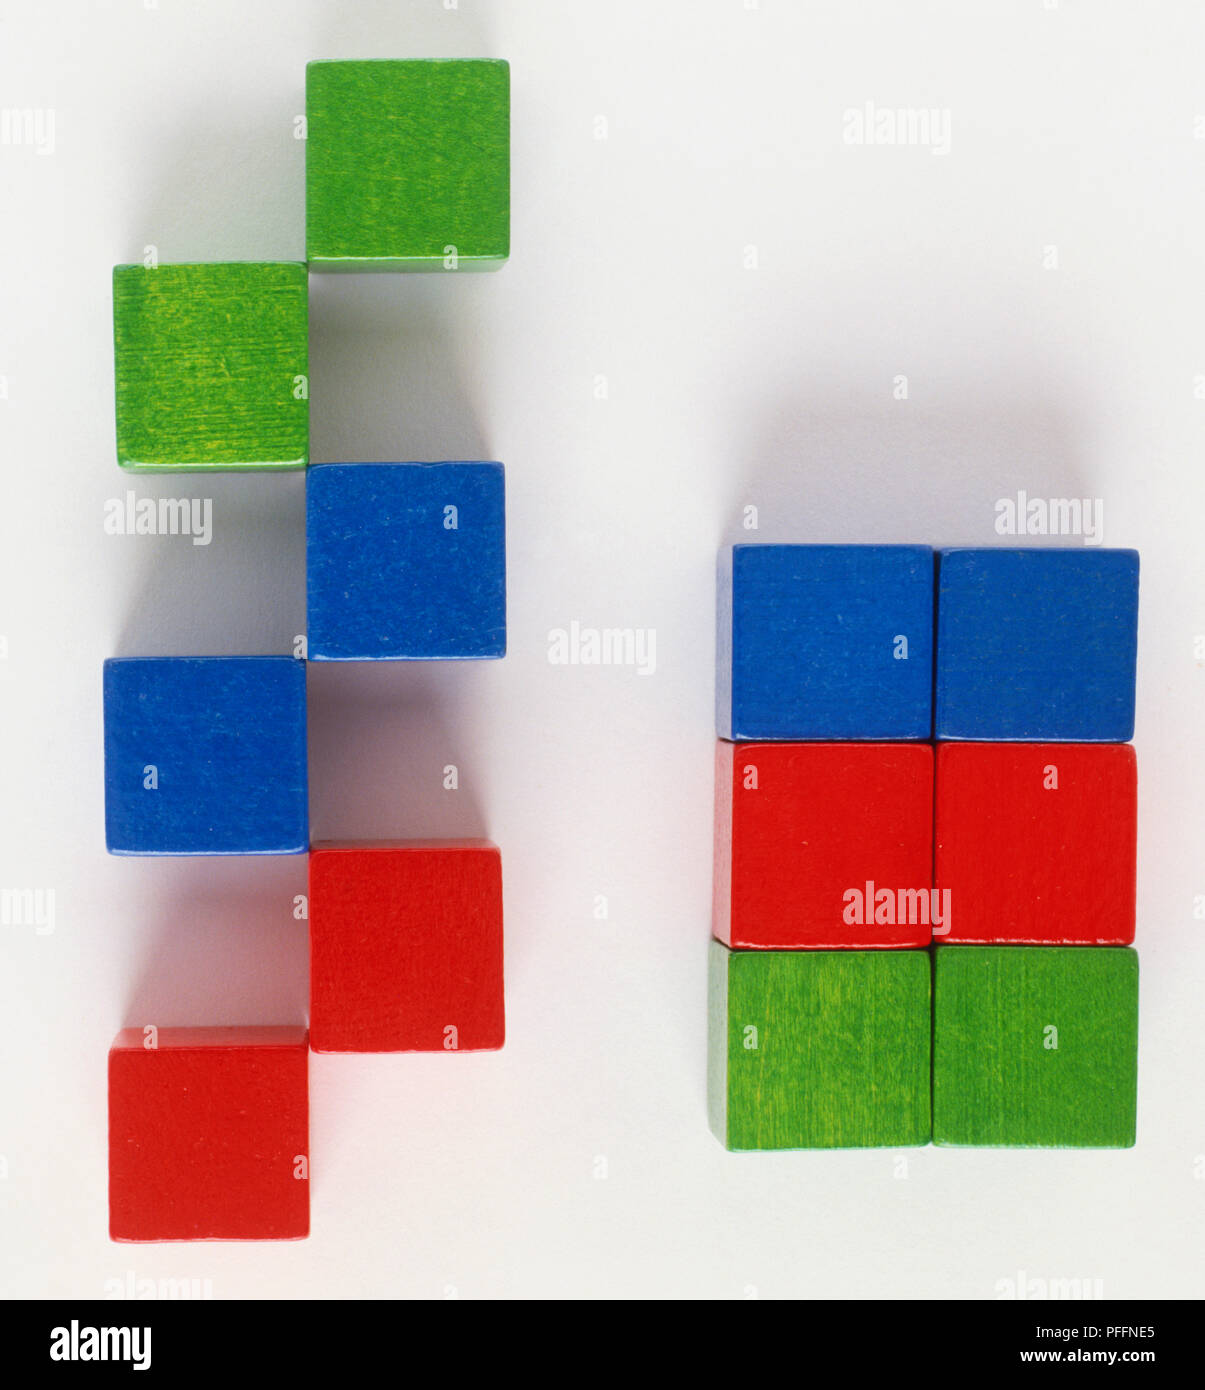 Rote, grüne und blaue Blöcke in Stacks und im Zick-Zack-Muster angeordnet. Stockfoto